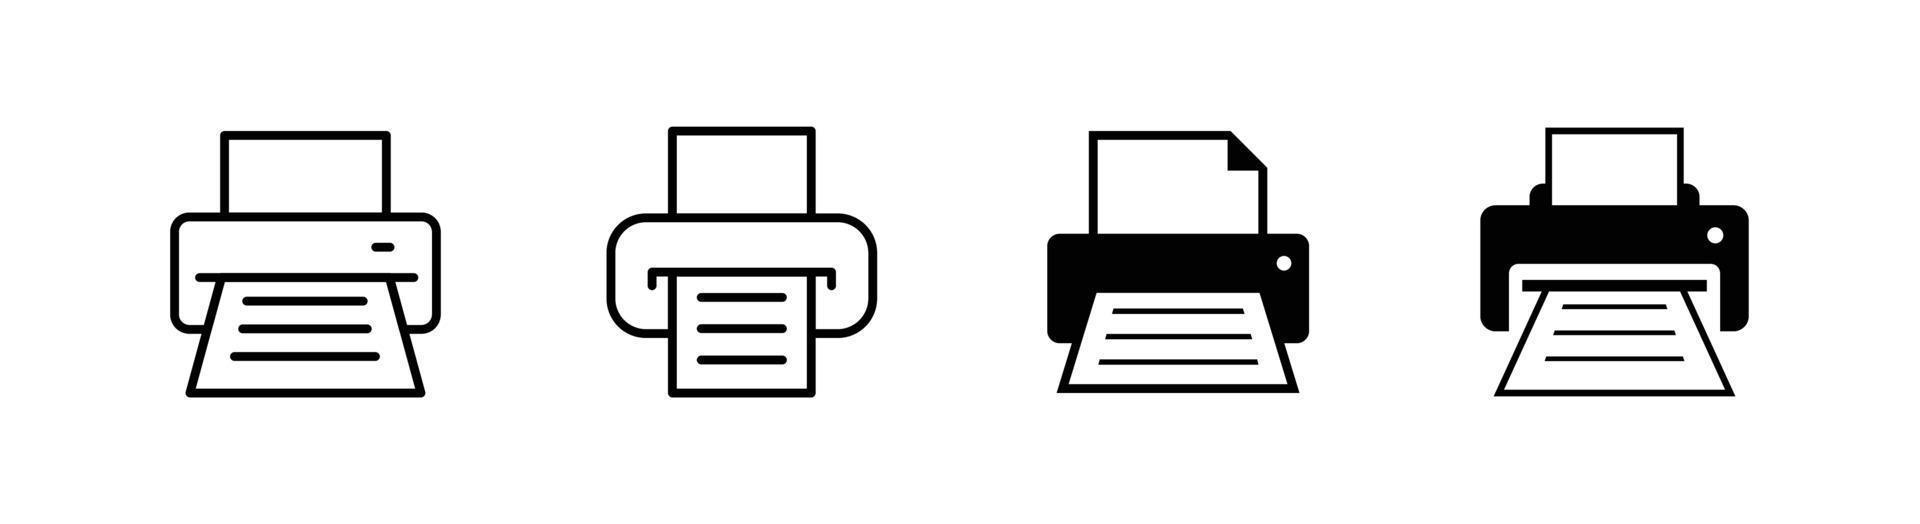 elemento de design de ícone de impressora adequado para site, design de impressão ou aplicativo vetor